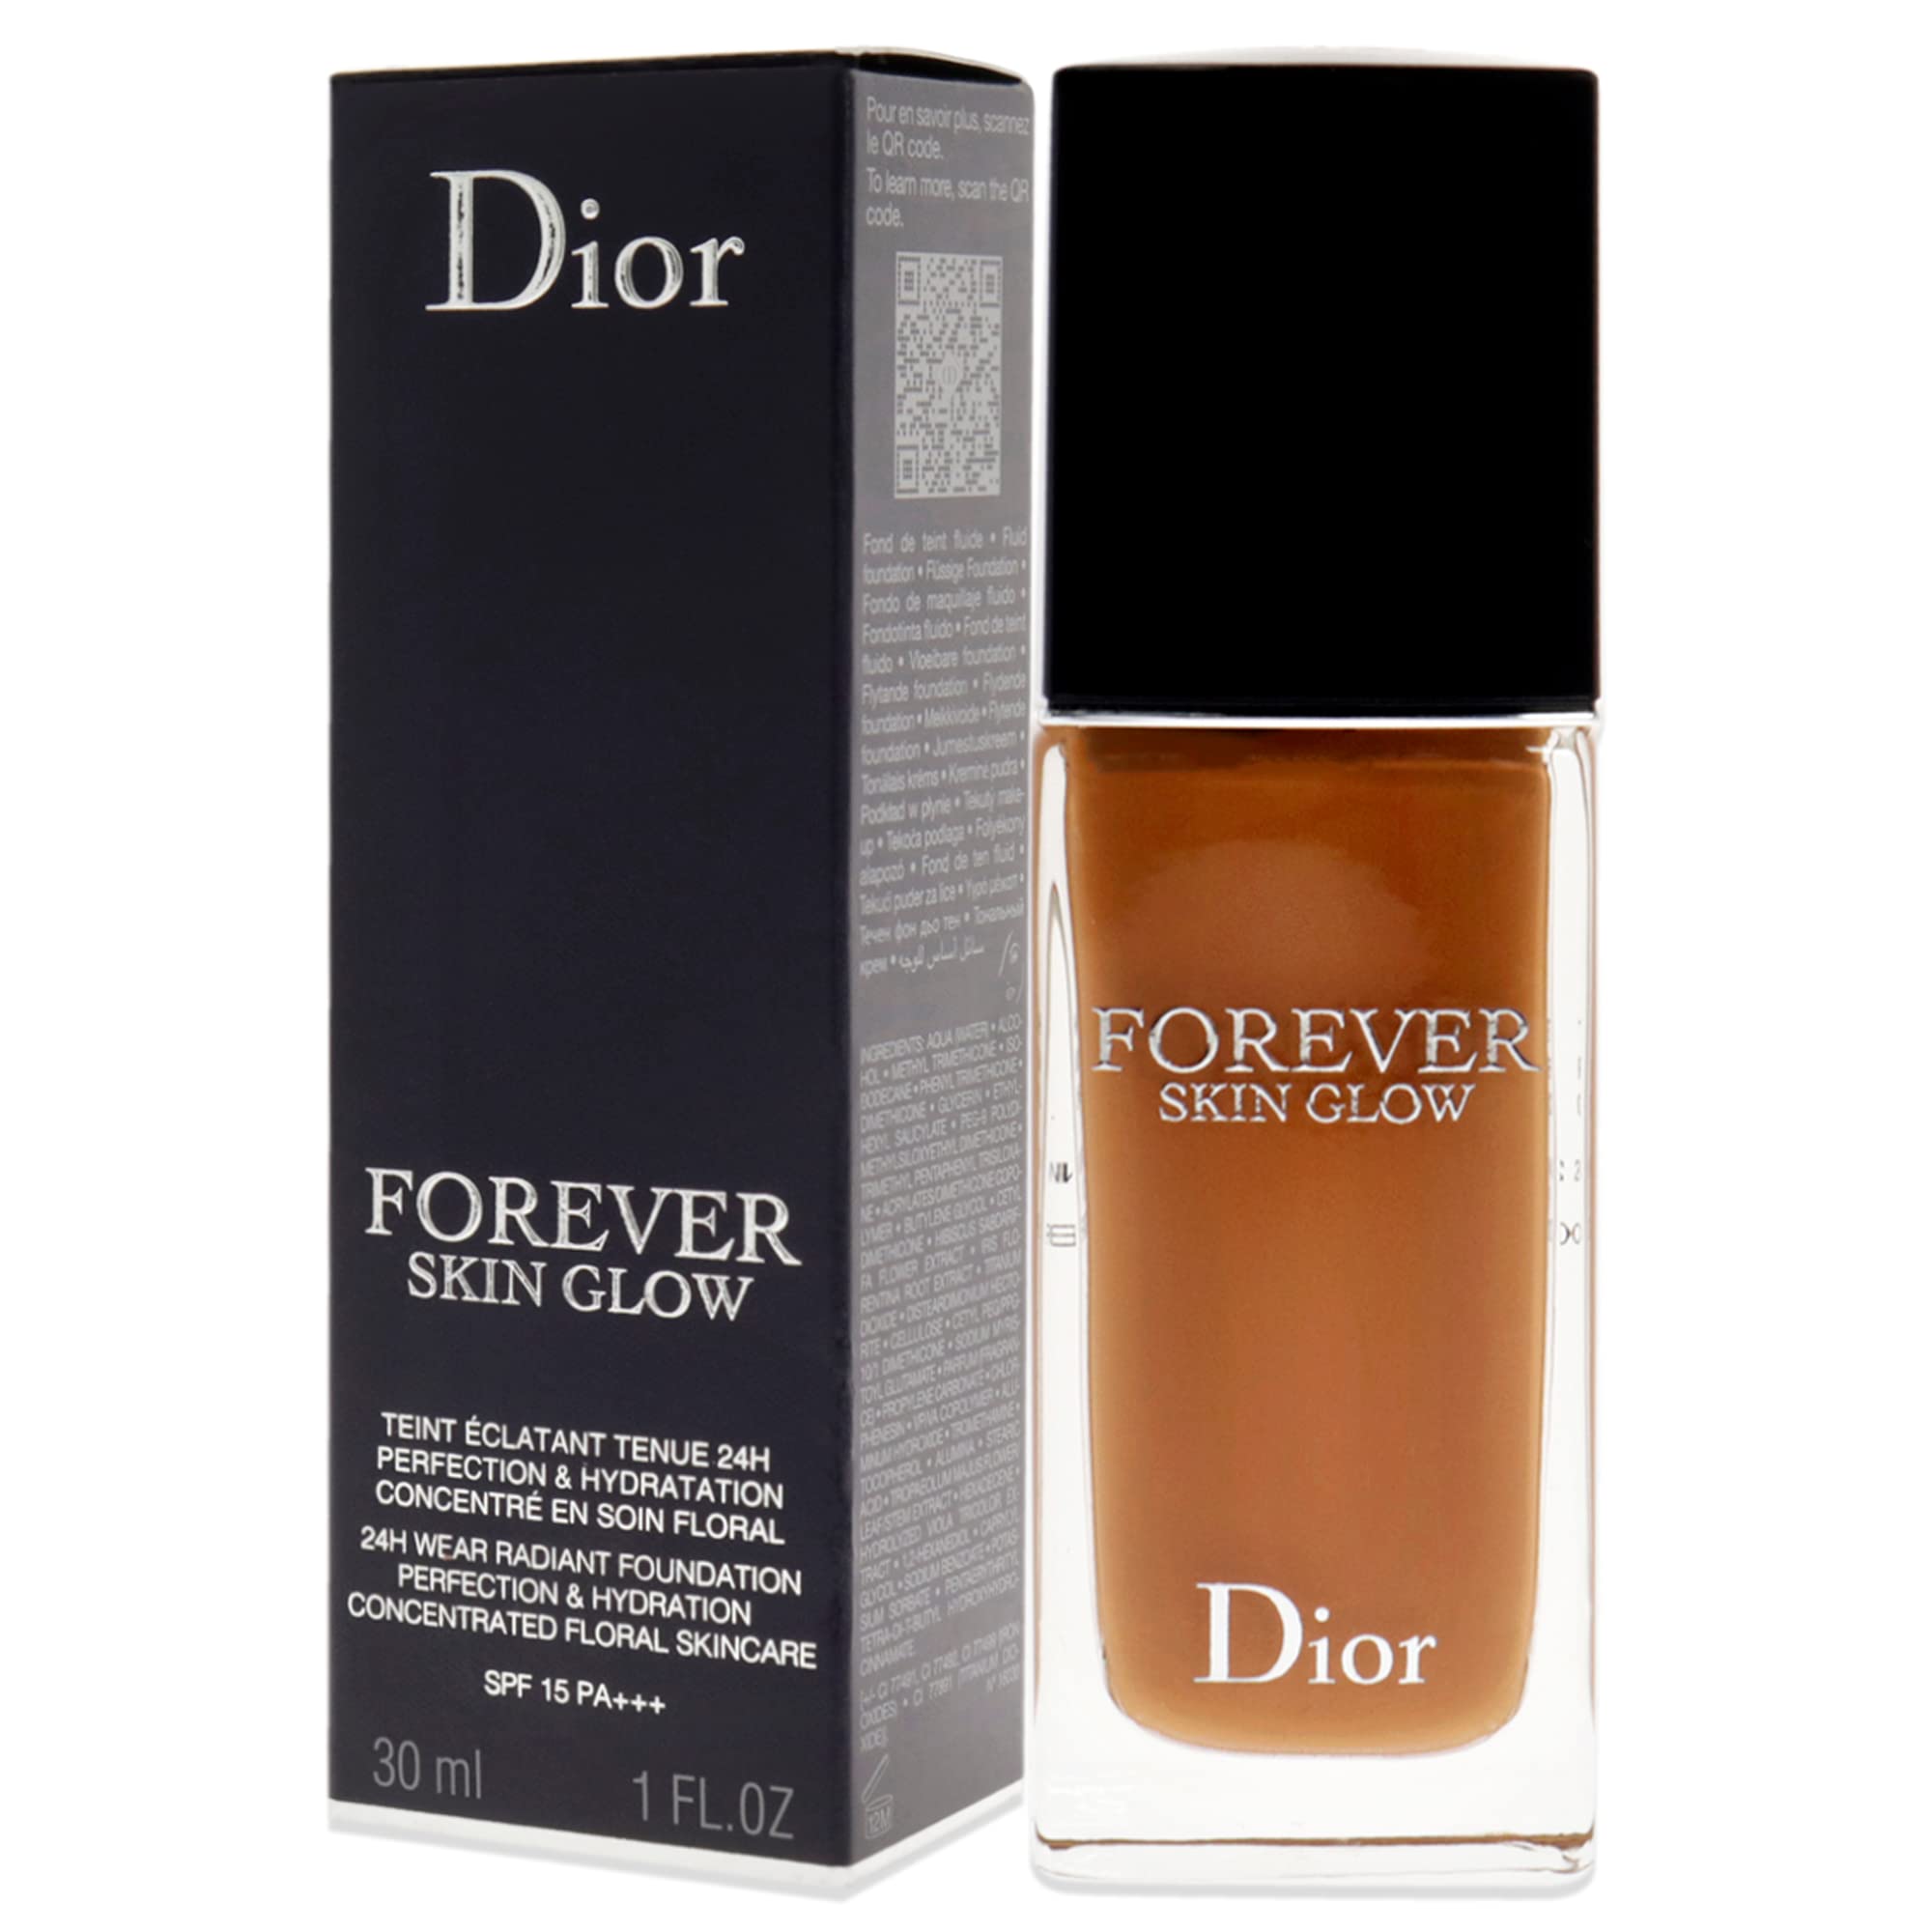 Christian Dior Dior Forever Skin Glow Foundation SPF 15 - 6N Neutral Glow Foundation Women 1 oz